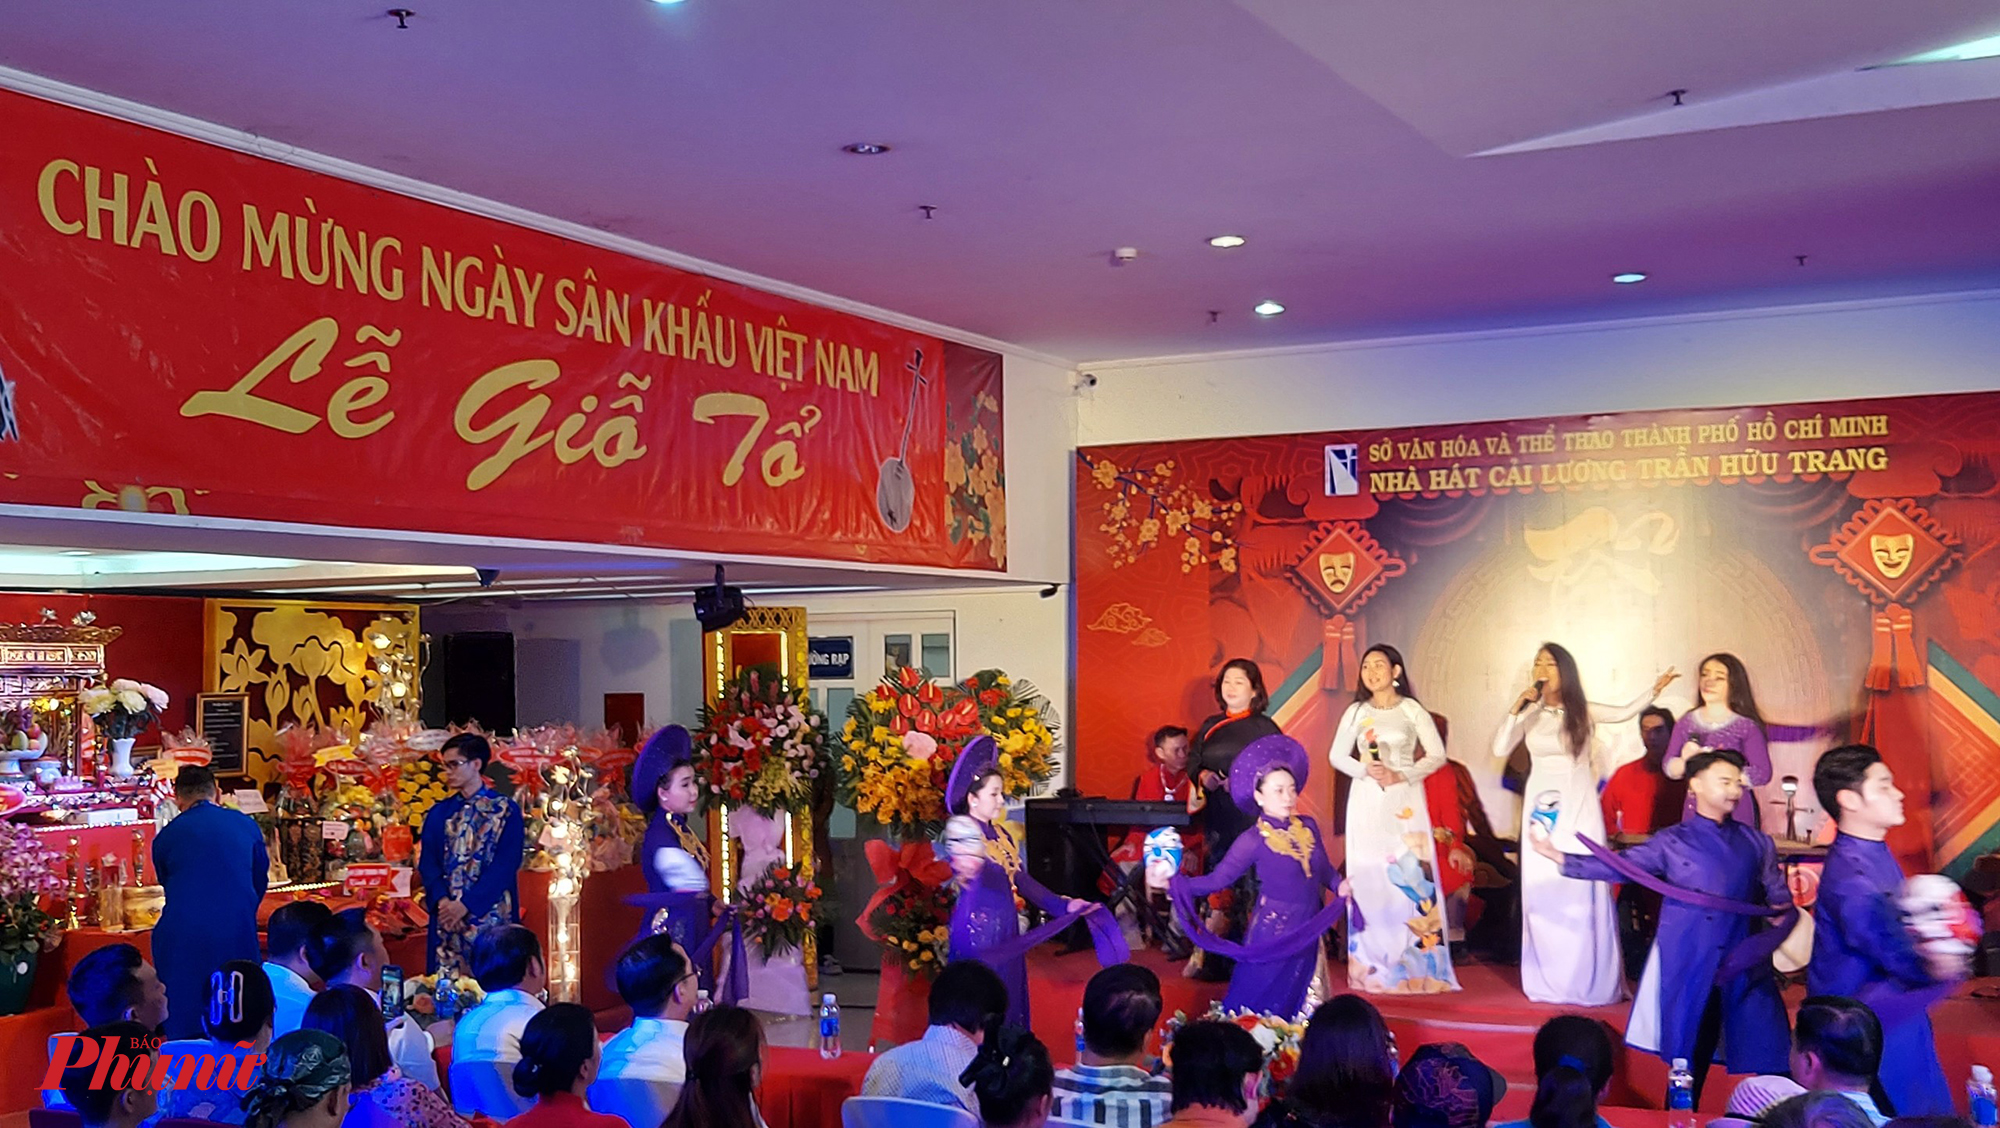 Cùng trong sáng 26/9, Nhà hát Cải lương Trần Hữu Trang cũng tổ chức lễ giỗ Tổ ngành sân khấu. Đây là nhà hát trọng điểm về nghệ thuật cải lương của miền nam. 